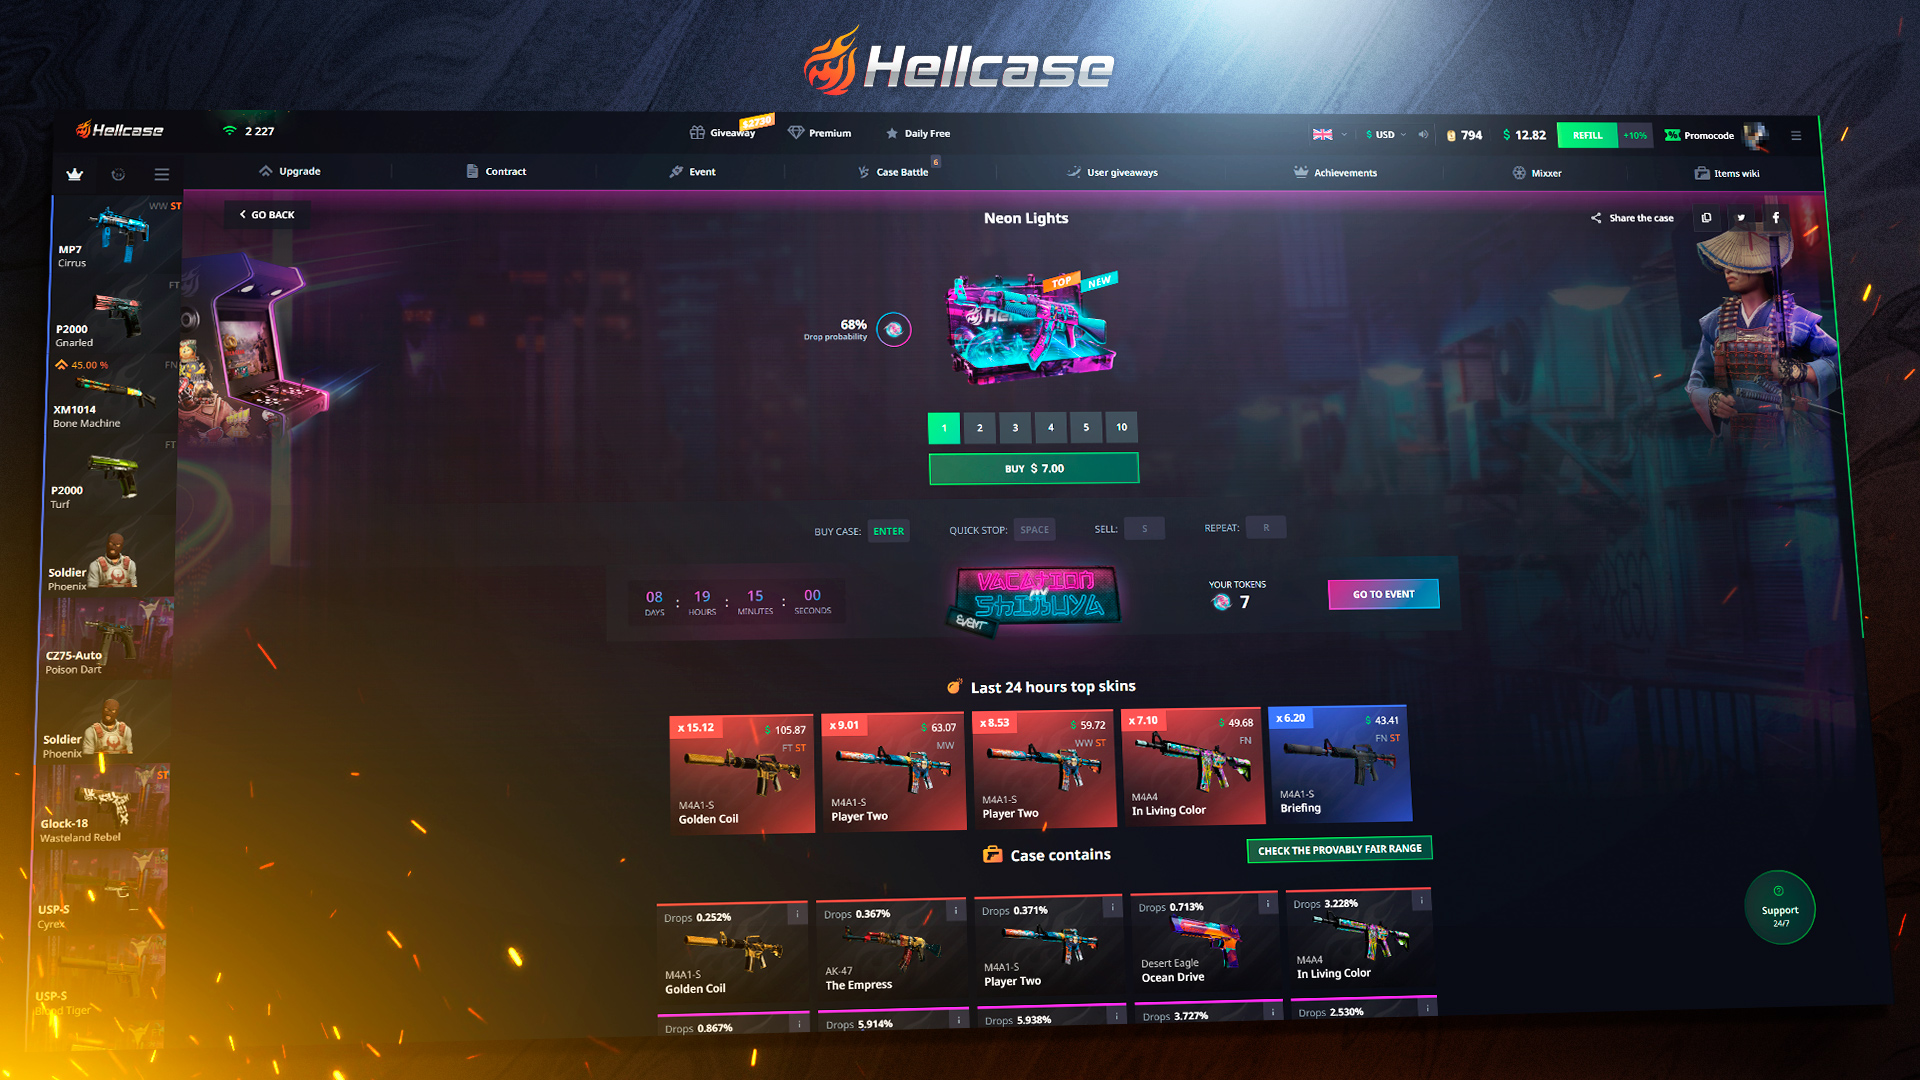 Hellcase.com 50 USD Wallet Card Code